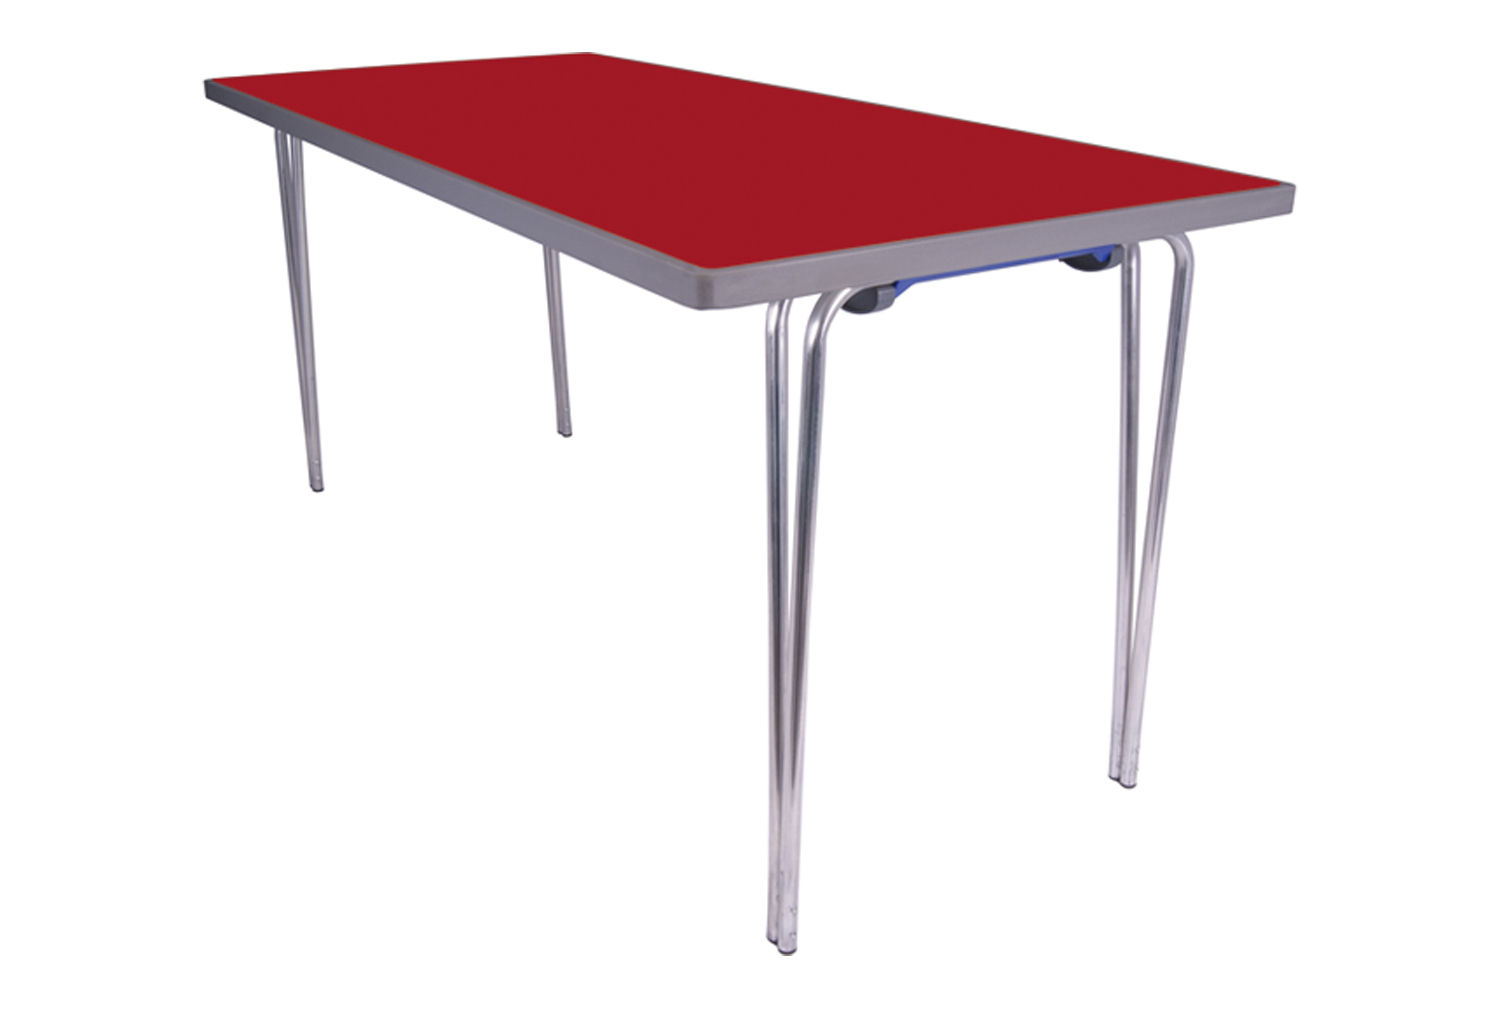 Gopak Premier Folding Table, 152wx76d (cm), Poppy Red